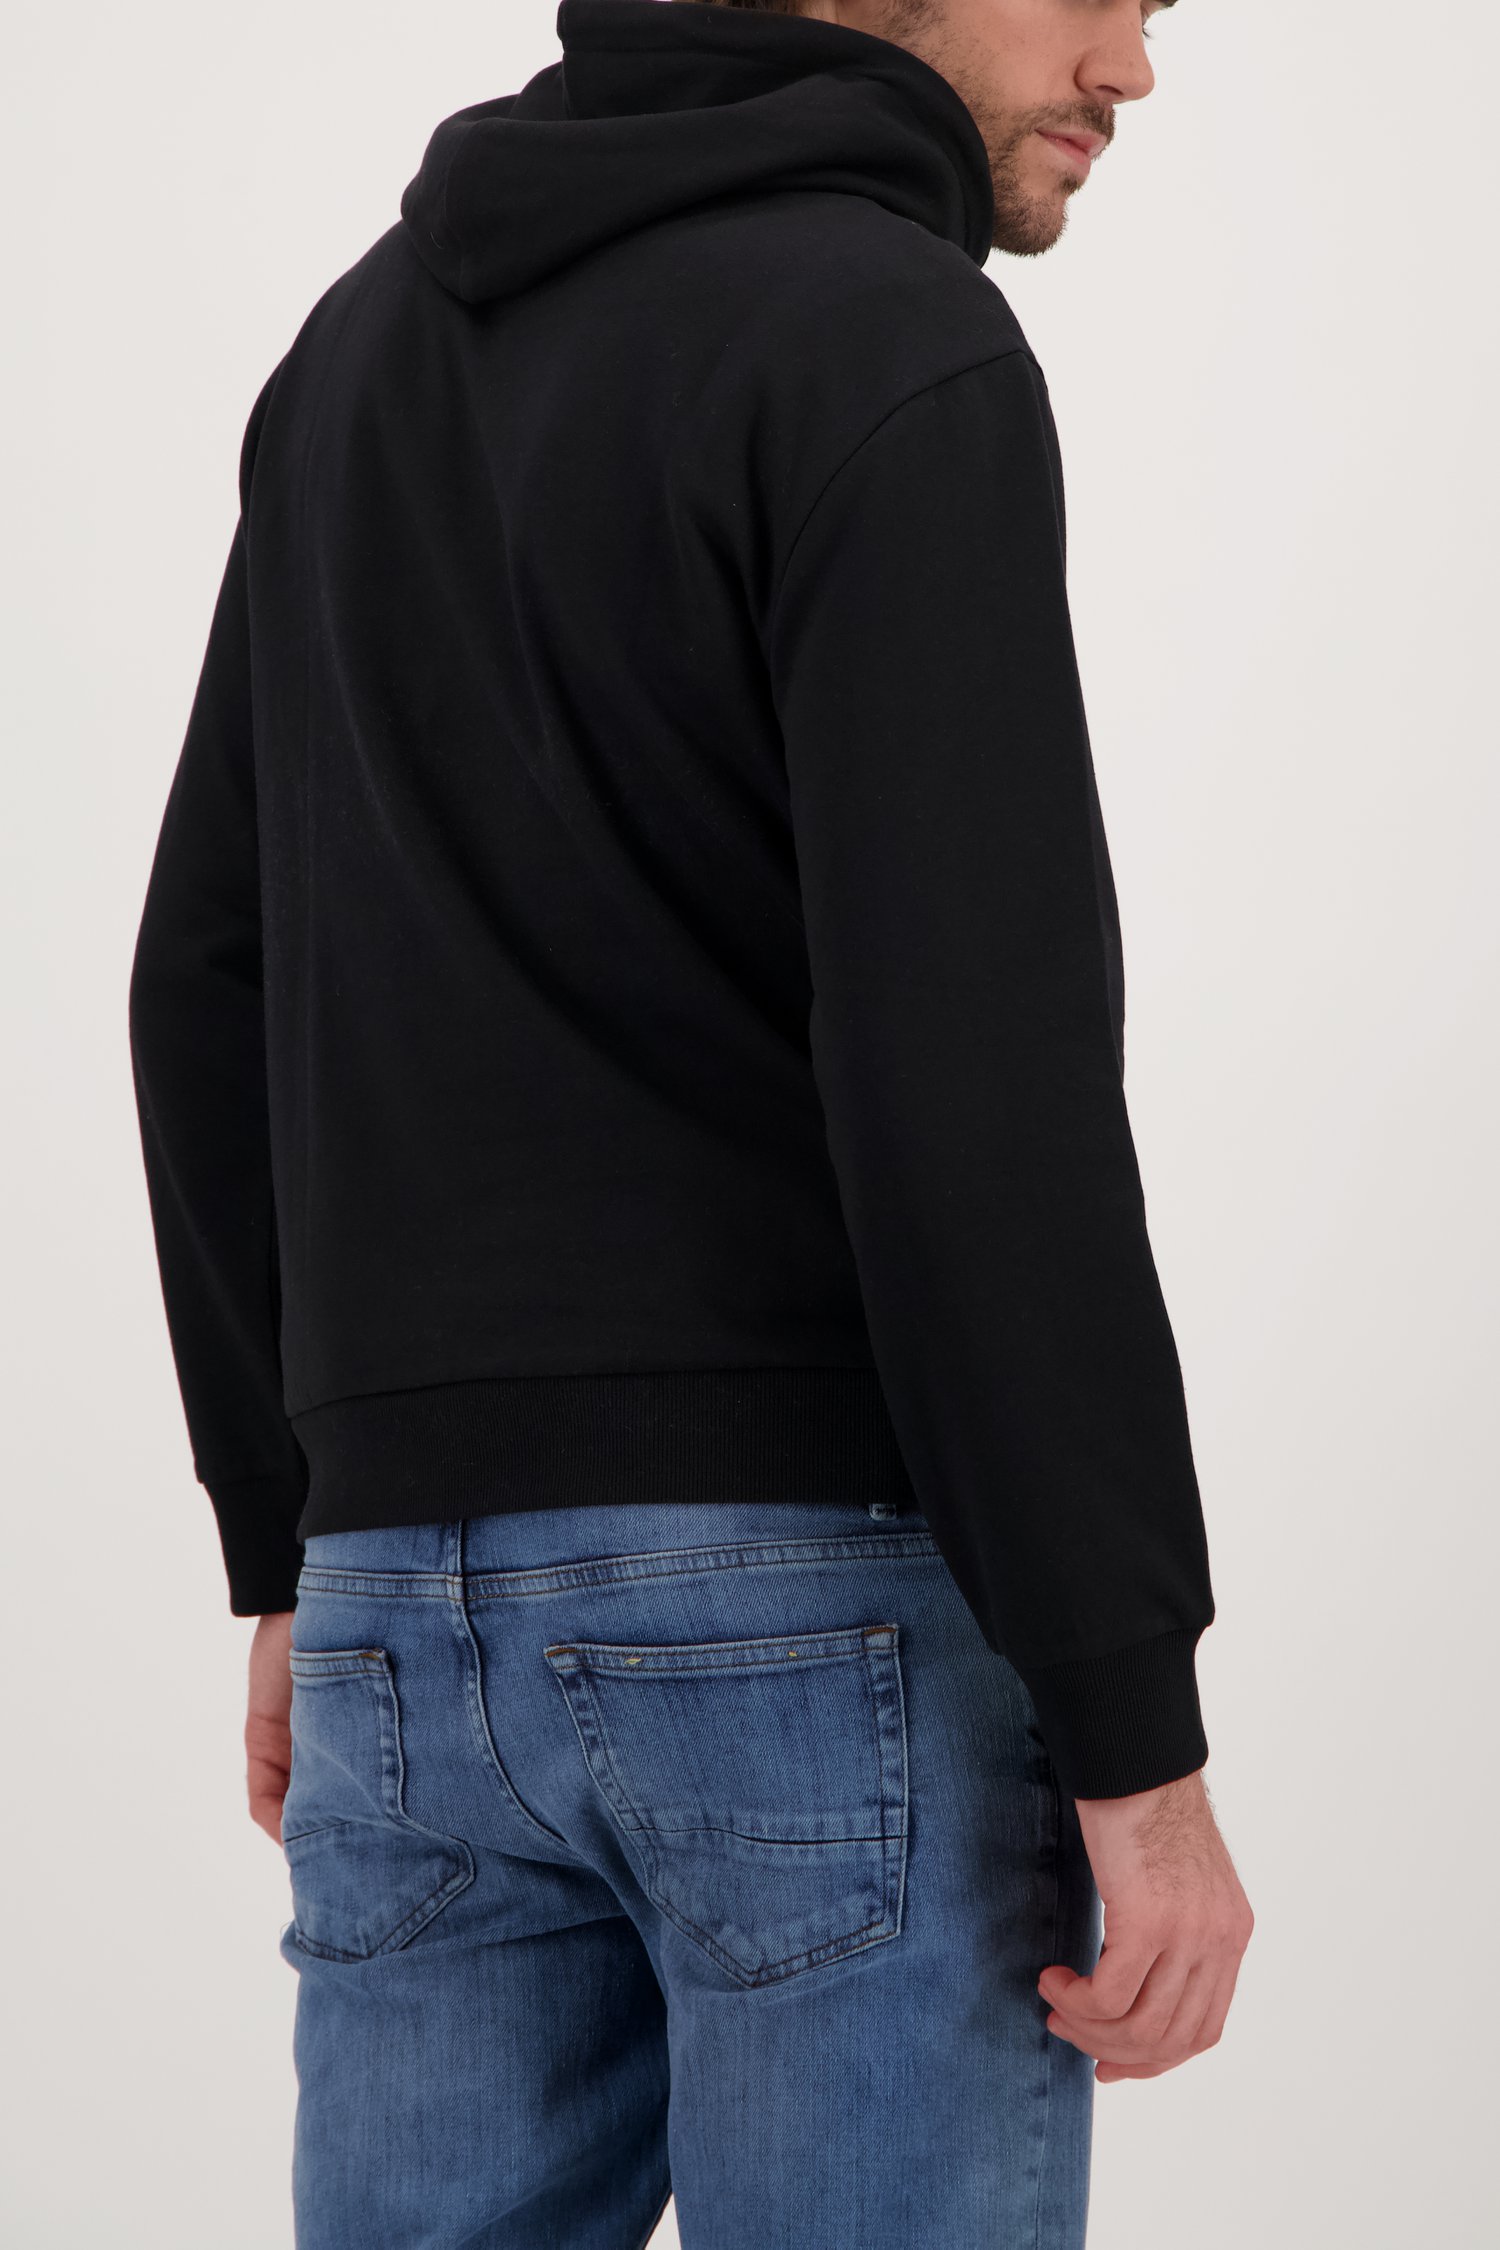 Zwarte sweater met opdruk van Ravøtt voor Heren